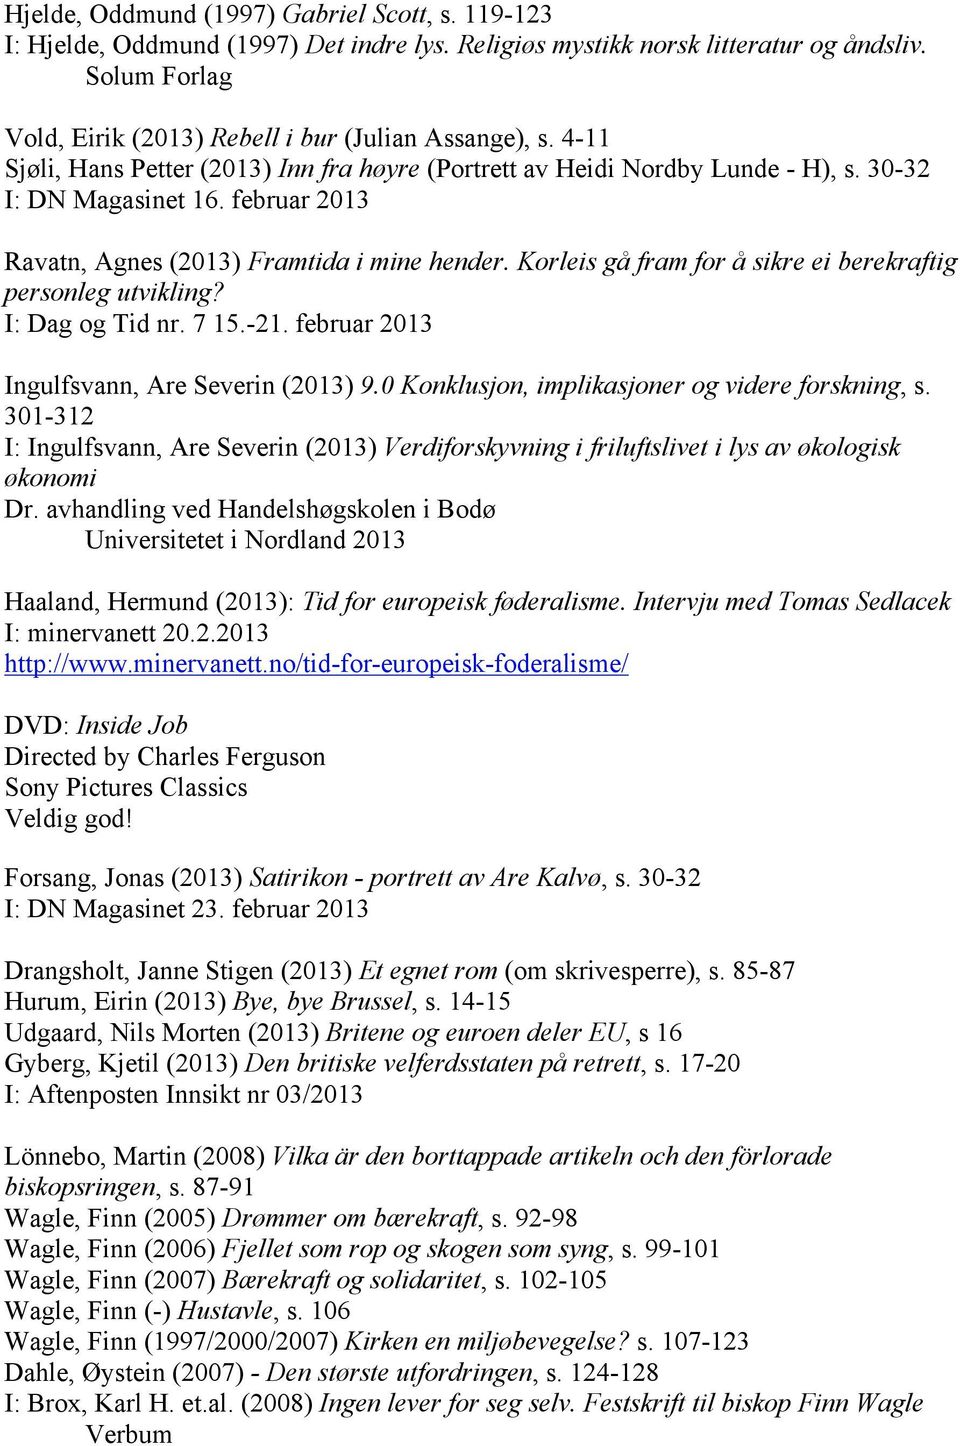 februar 2013 Ravatn, Agnes (2013) Framtida i mine hender. Korleis gå fram for å sikre ei berekraftig personleg utvikling? I: Dag og Tid nr. 7 15.-21. februar 2013 Ingulfsvann, Are Severin (2013) 9.